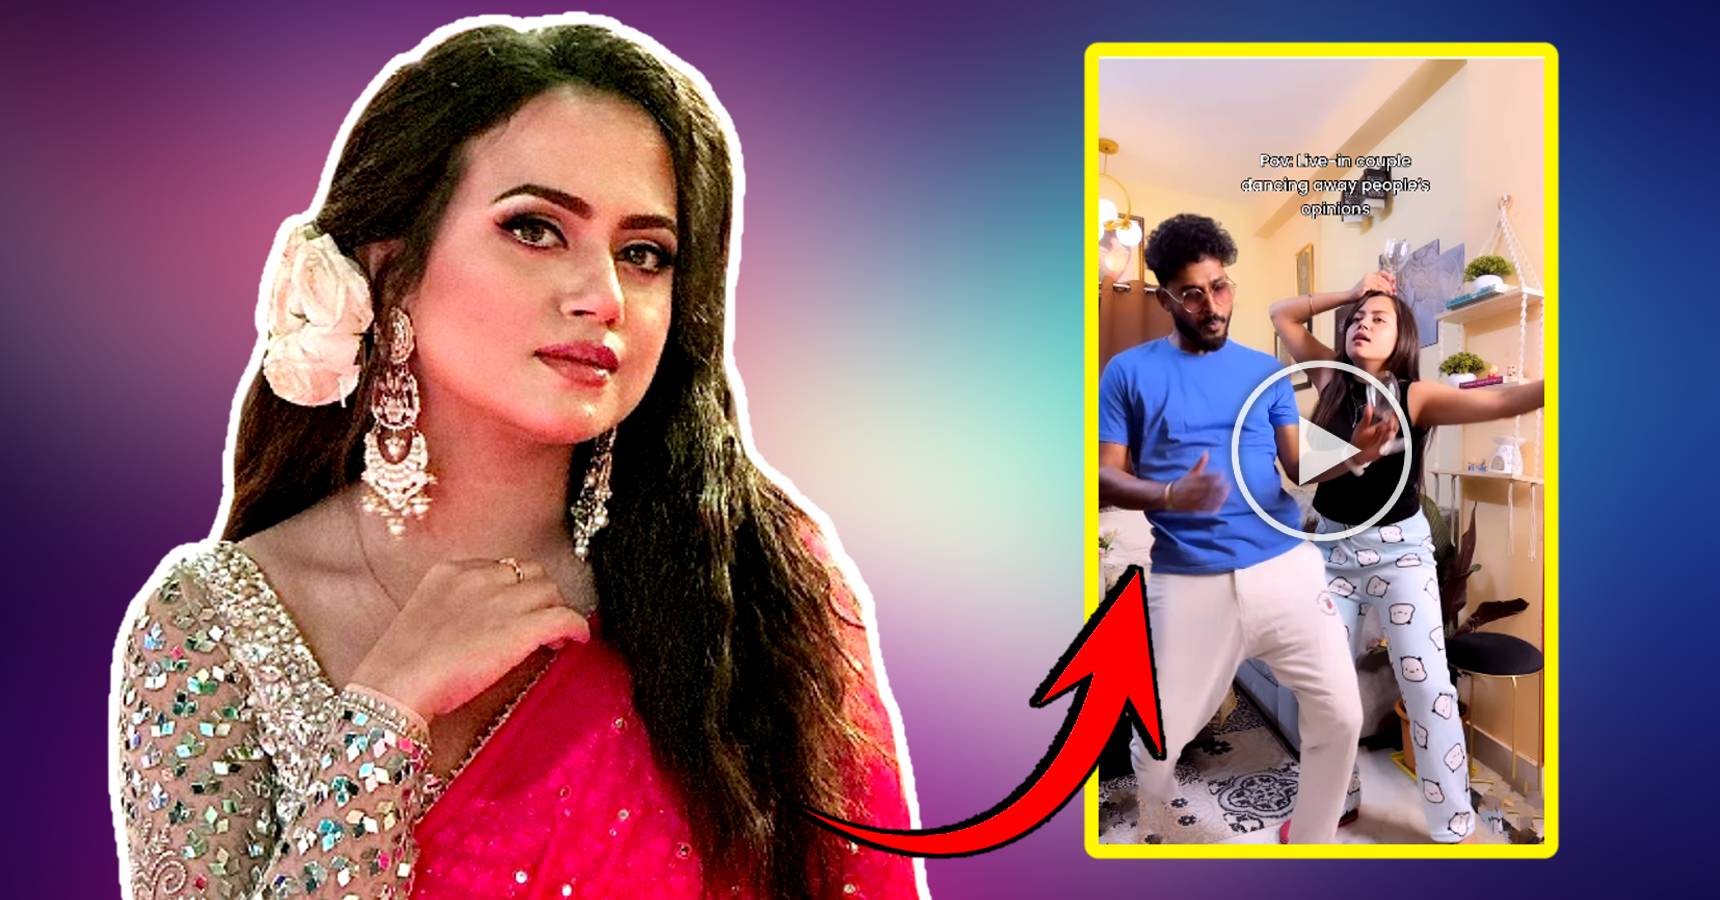 Anurager Chhowa Mishka AKA Ahona Dutta dance video goes viral